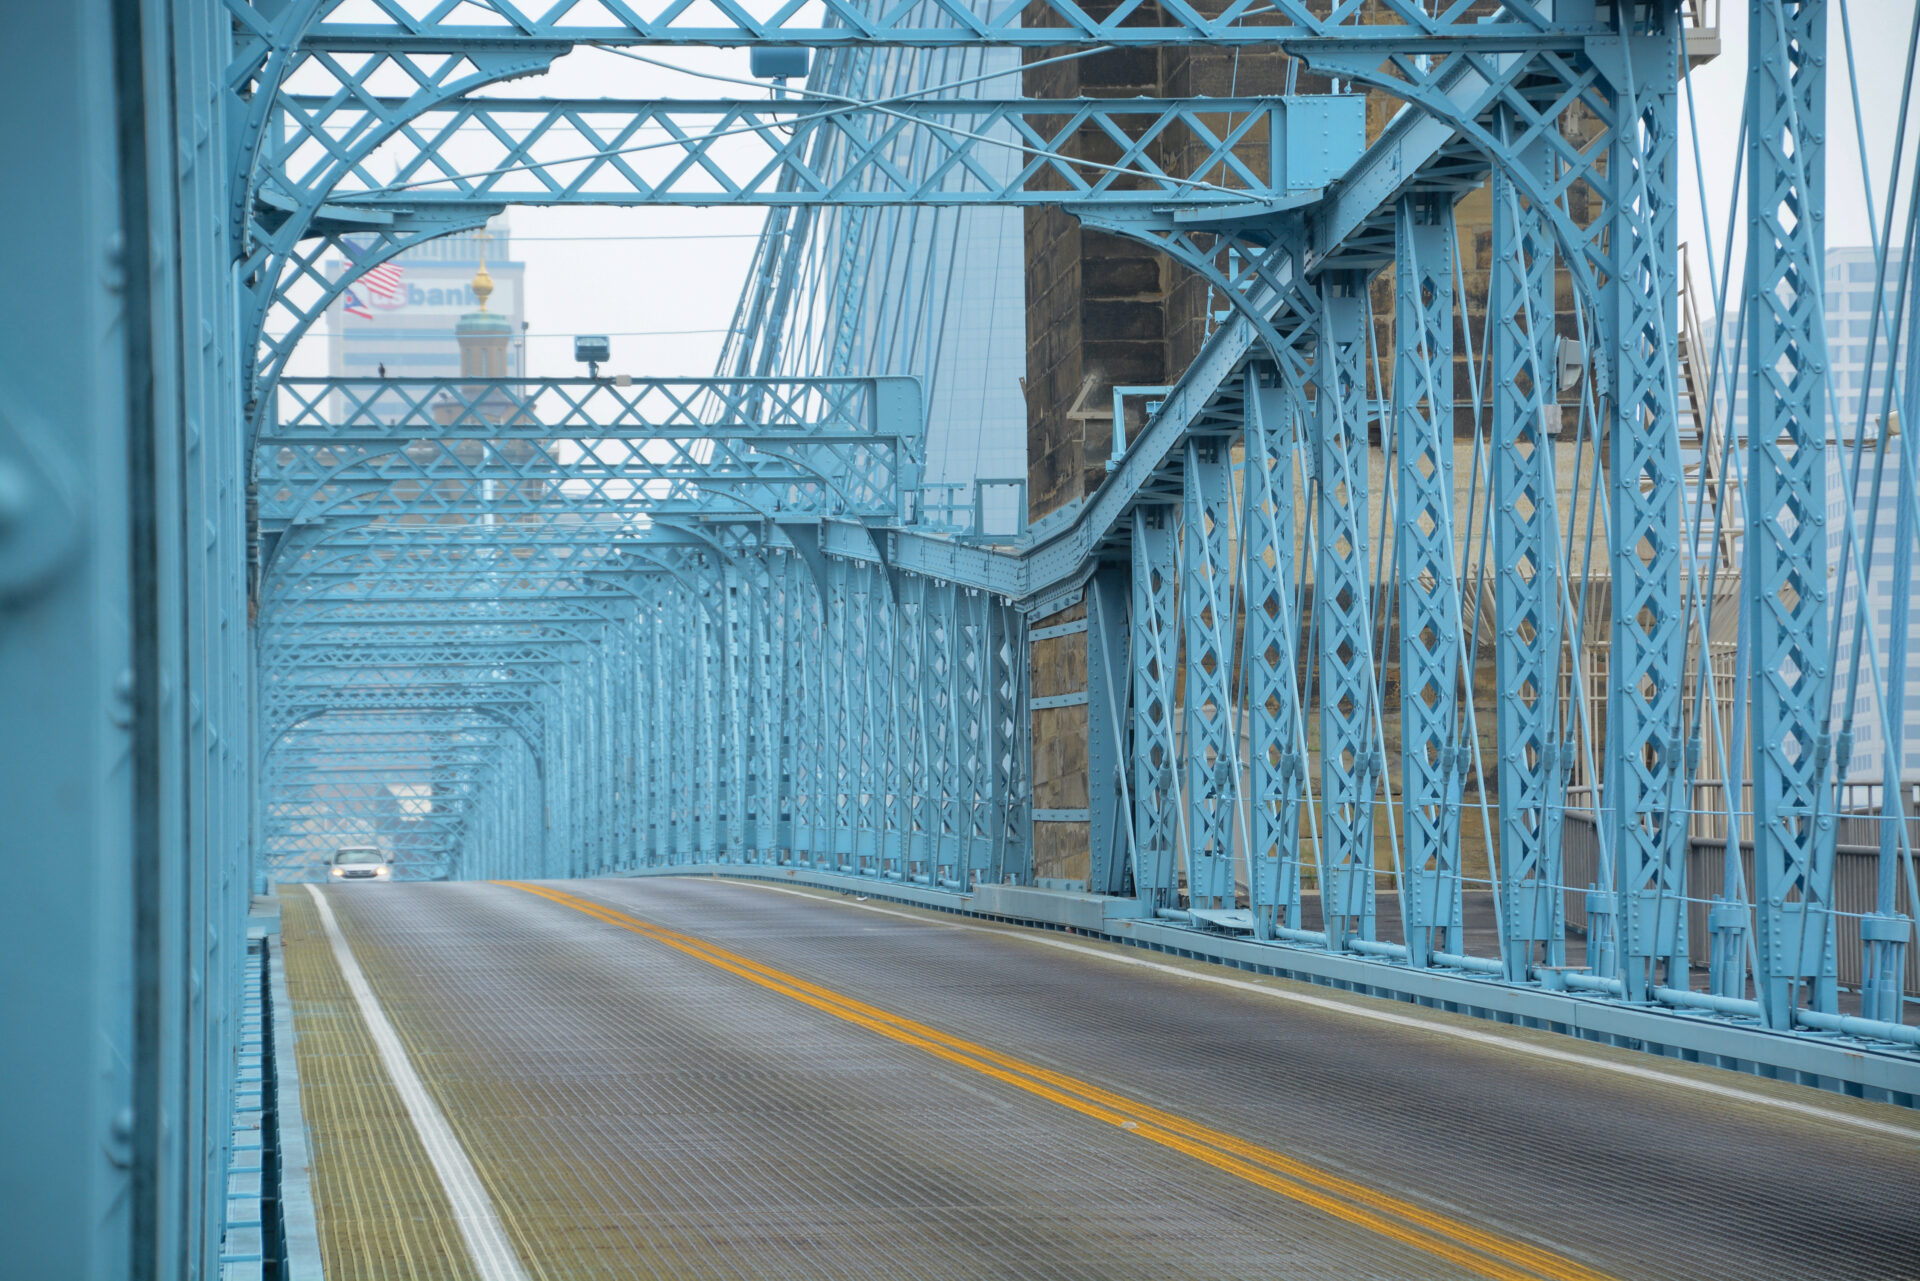 Die Roebling Bridge in Cincinnati ist himmelblau angestrichen. Wegen der Geräusche, die Autos auf ihr machen, wird sie auch als Singing Bridge bezeichnet